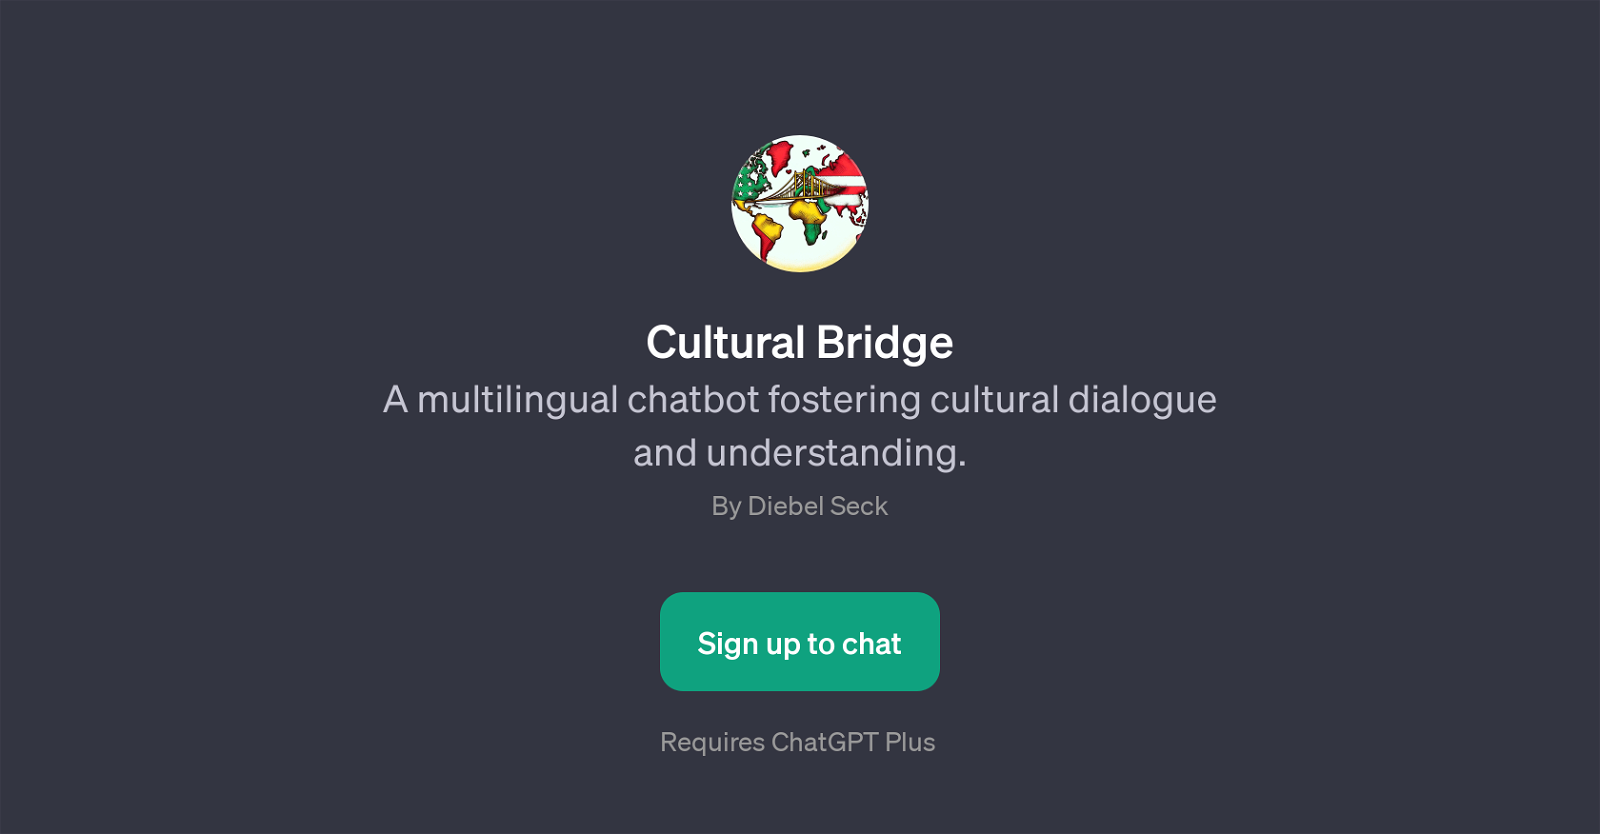 Cultural Bridge website